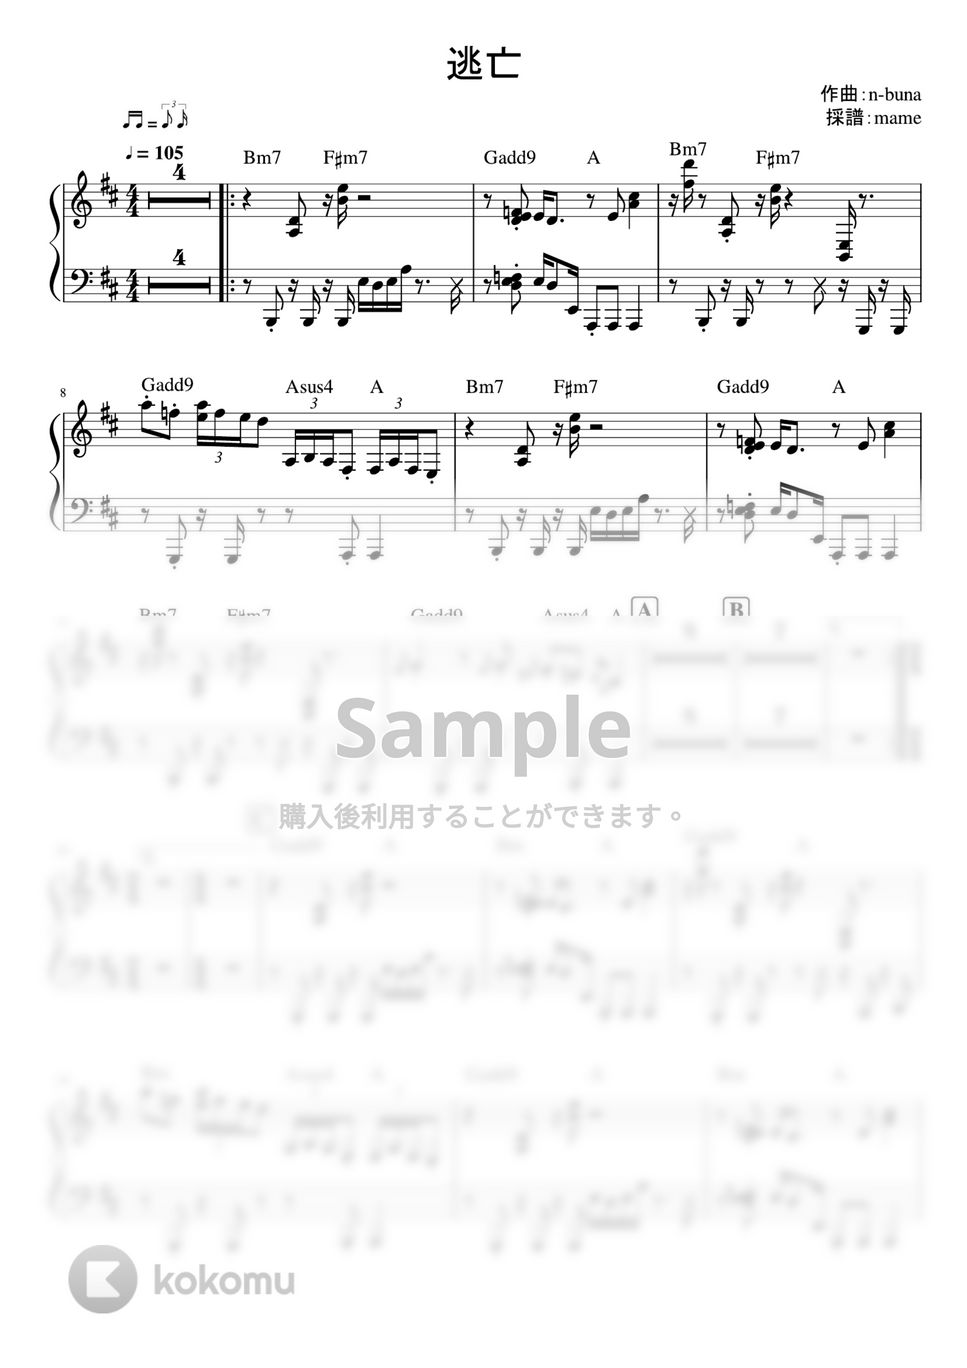 ヨルシカ - 逃亡(ピアノパート) by mame